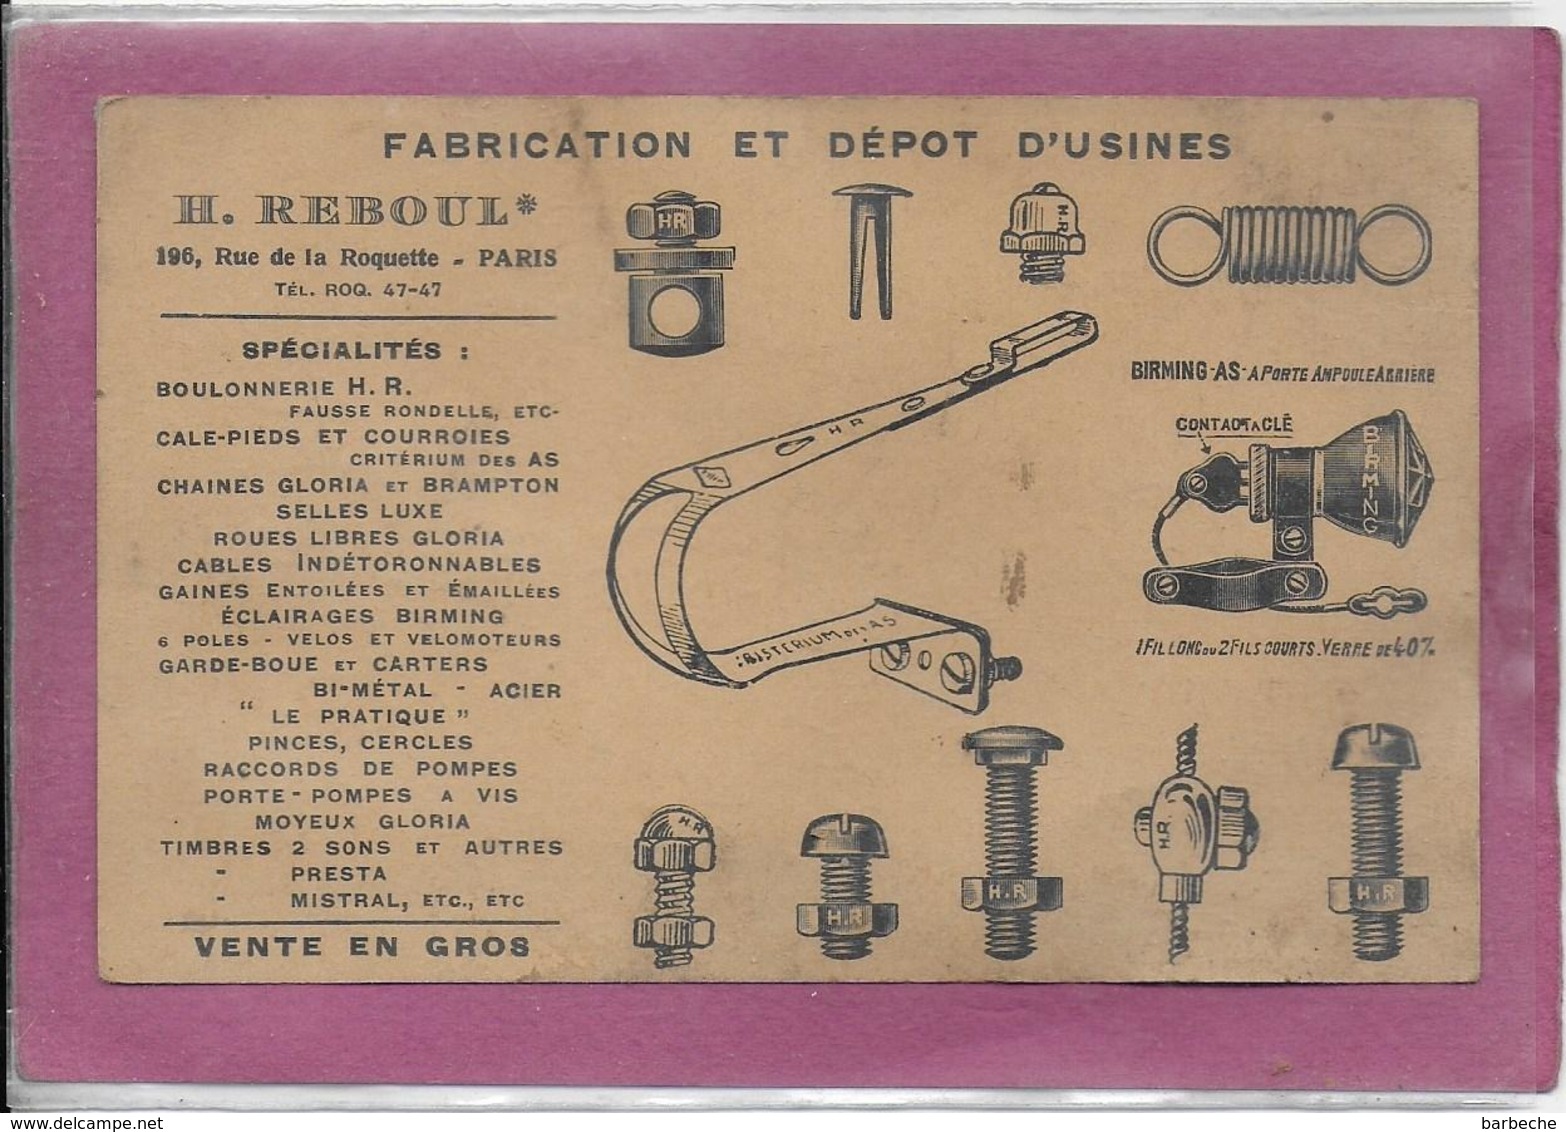 Fabrication Et Dépot D' Usine  H. REBOUL  196, Rue De La Roquette PARIS  Spécialités  Boulonnerie ... - Materiaal En Toebehoren